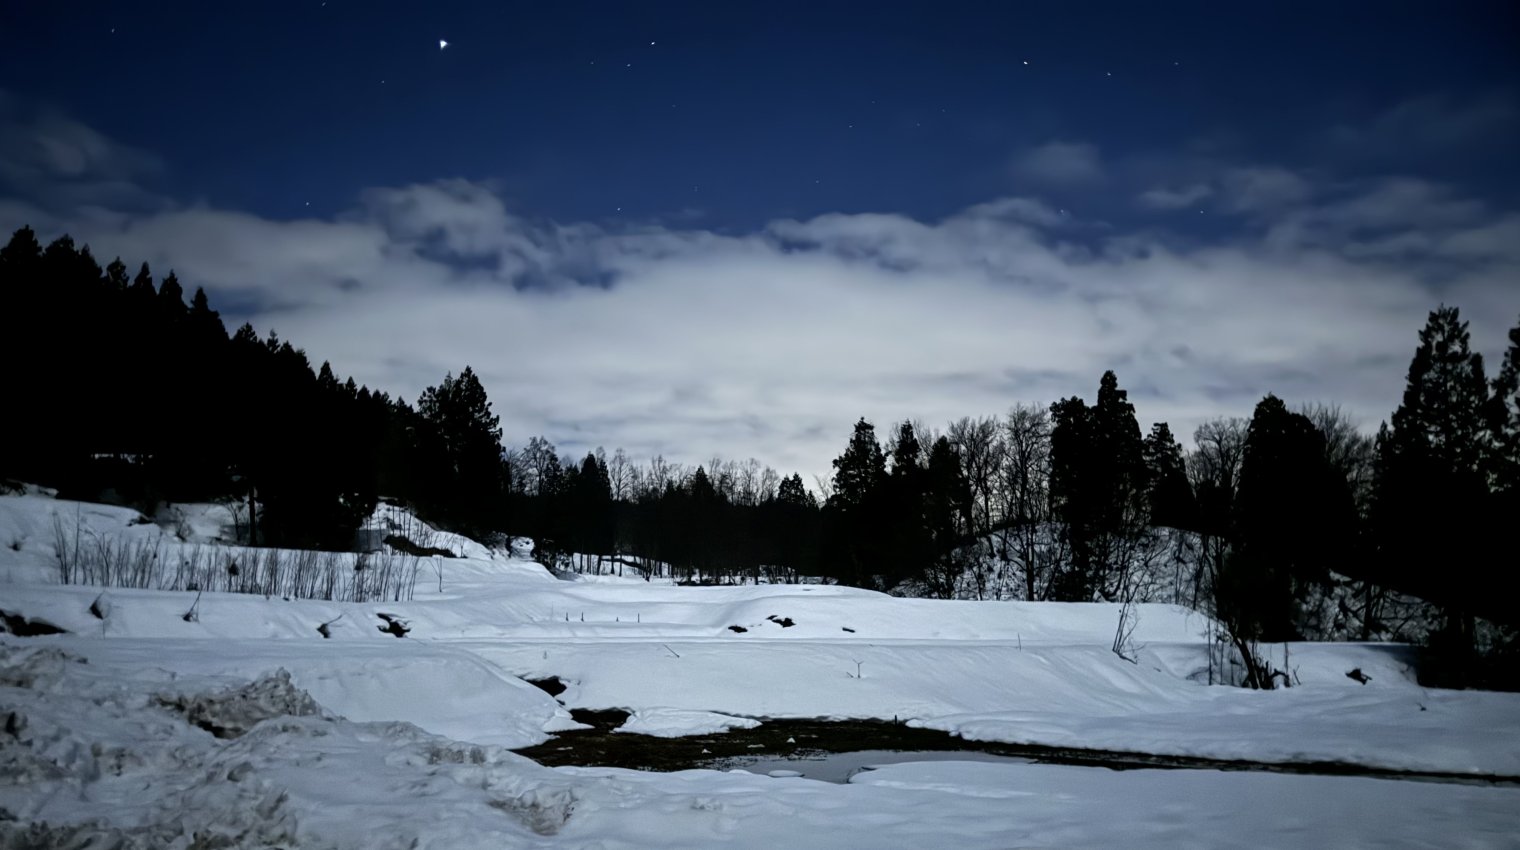 A snowy landscape under the stars in Joetsu